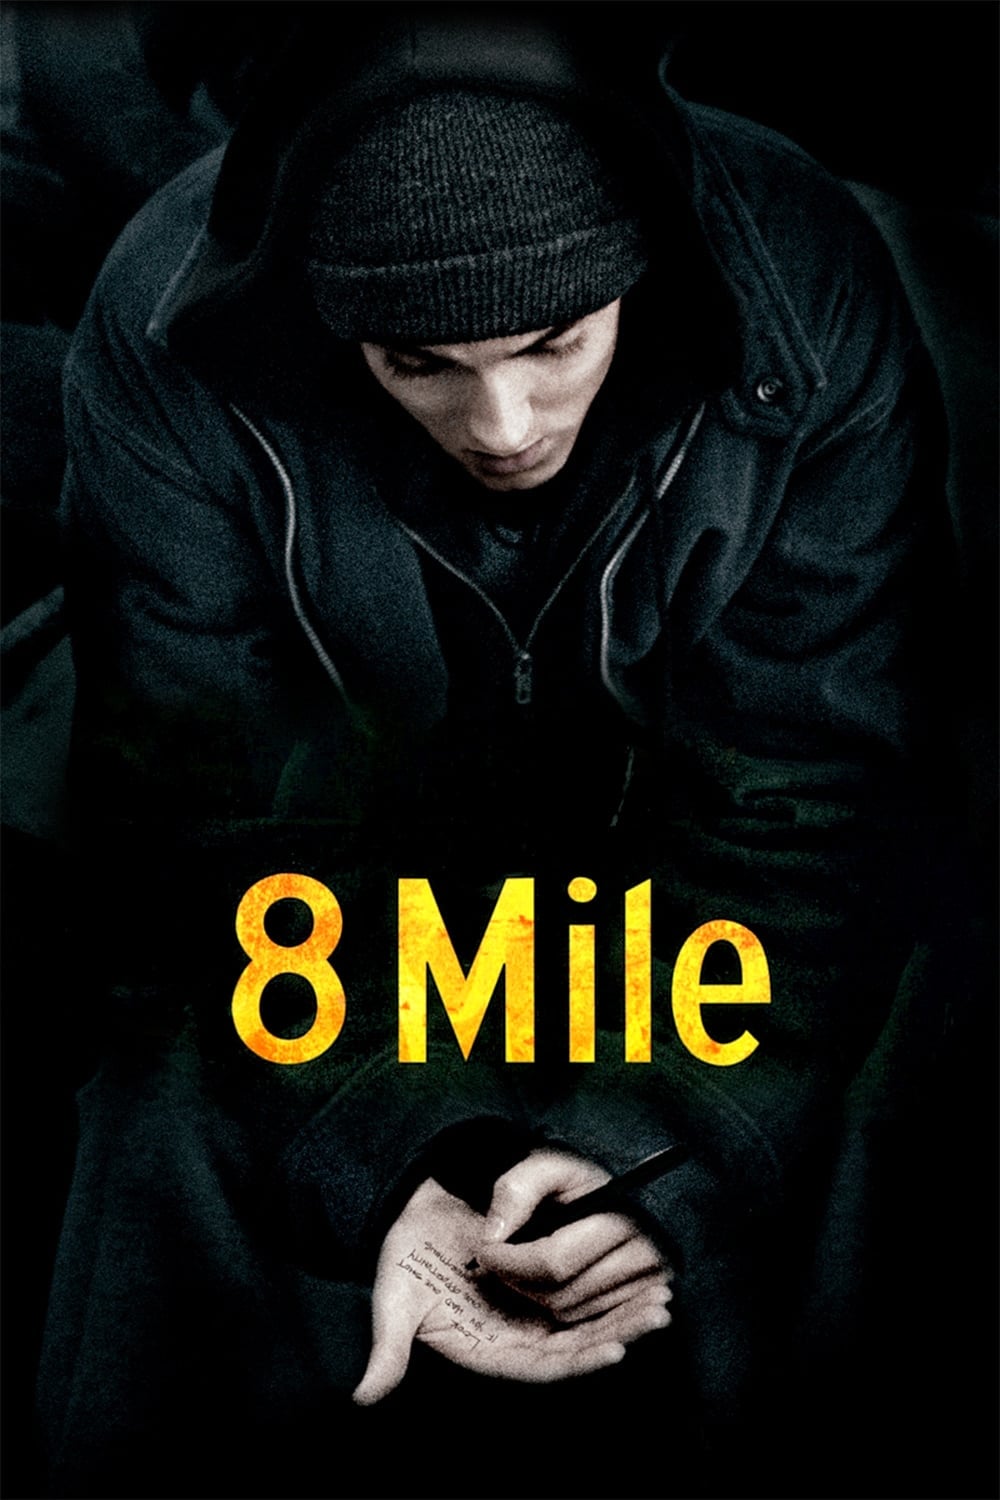 8 millas (2002)